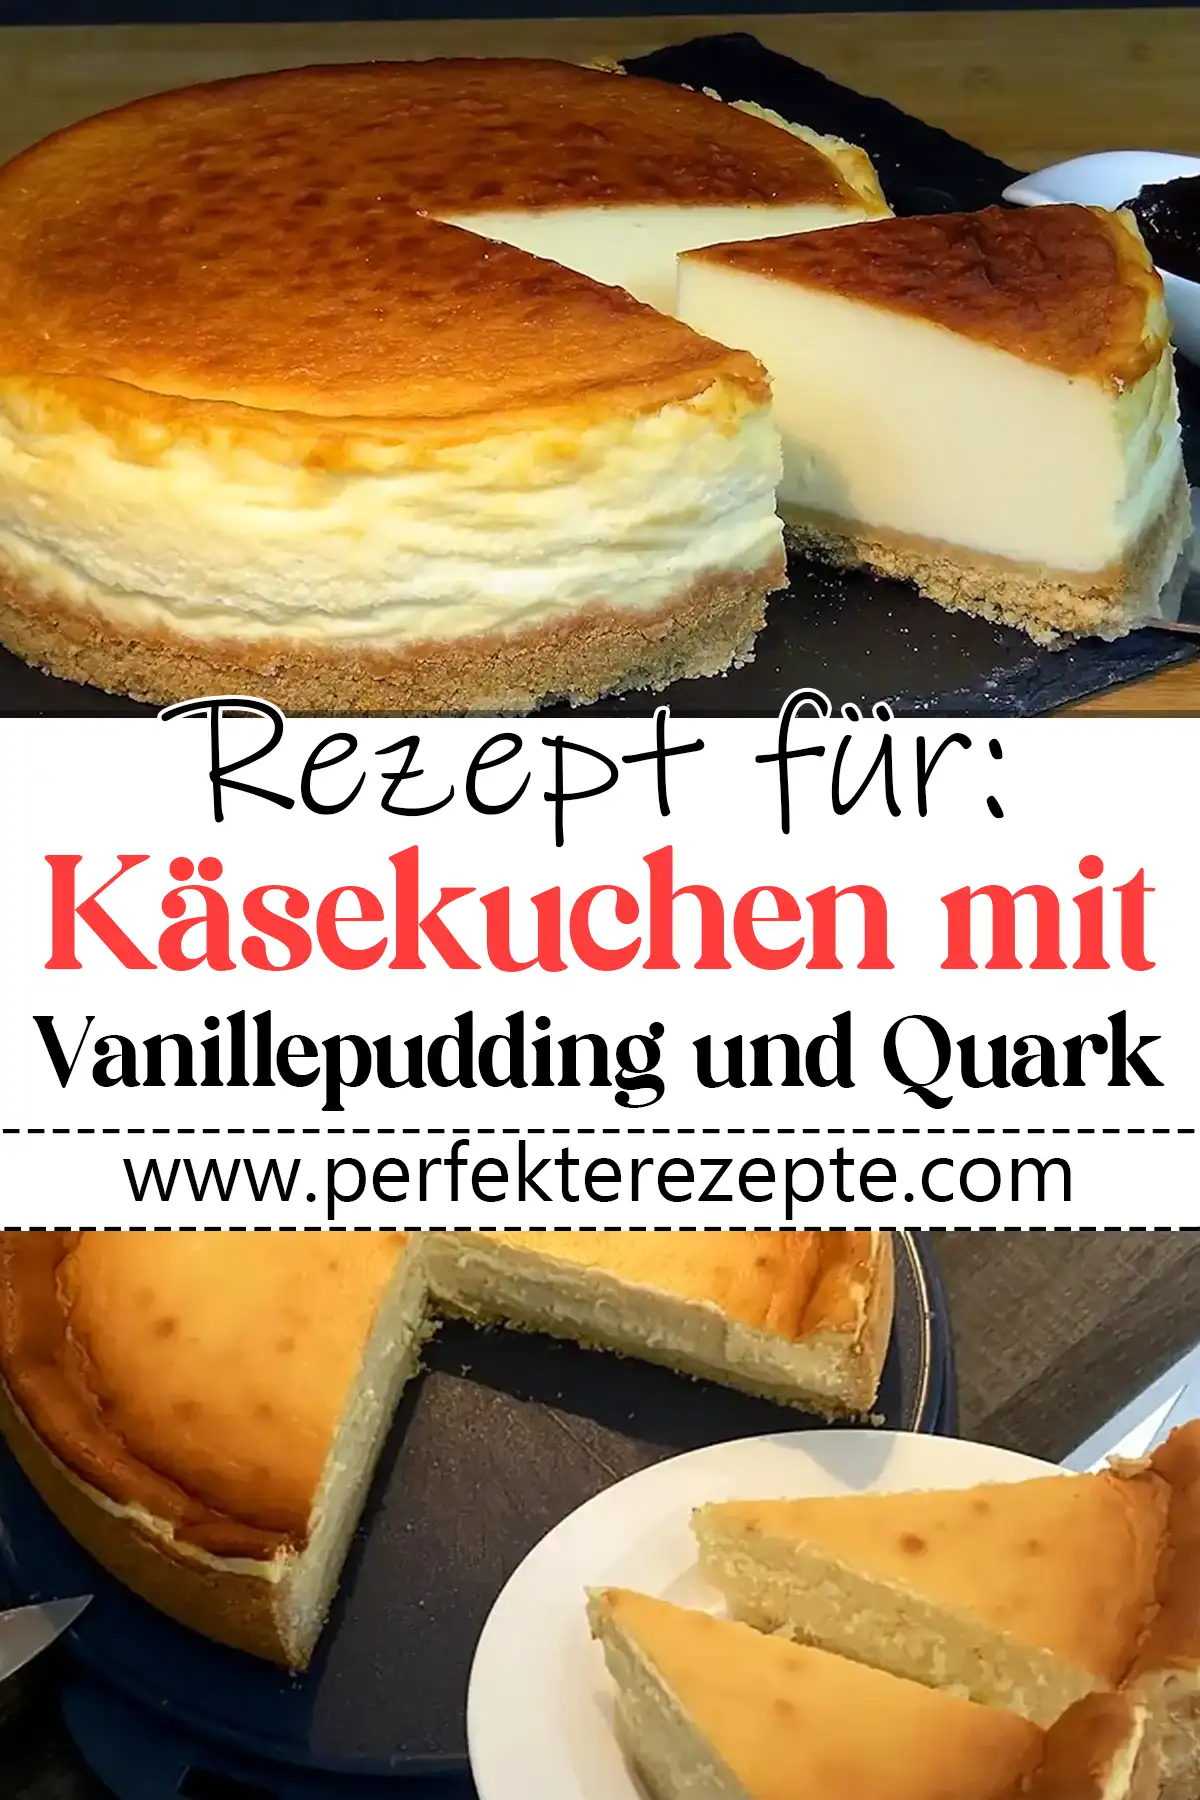 Käsekuchen mit Vanillepudding und Quark Rezept